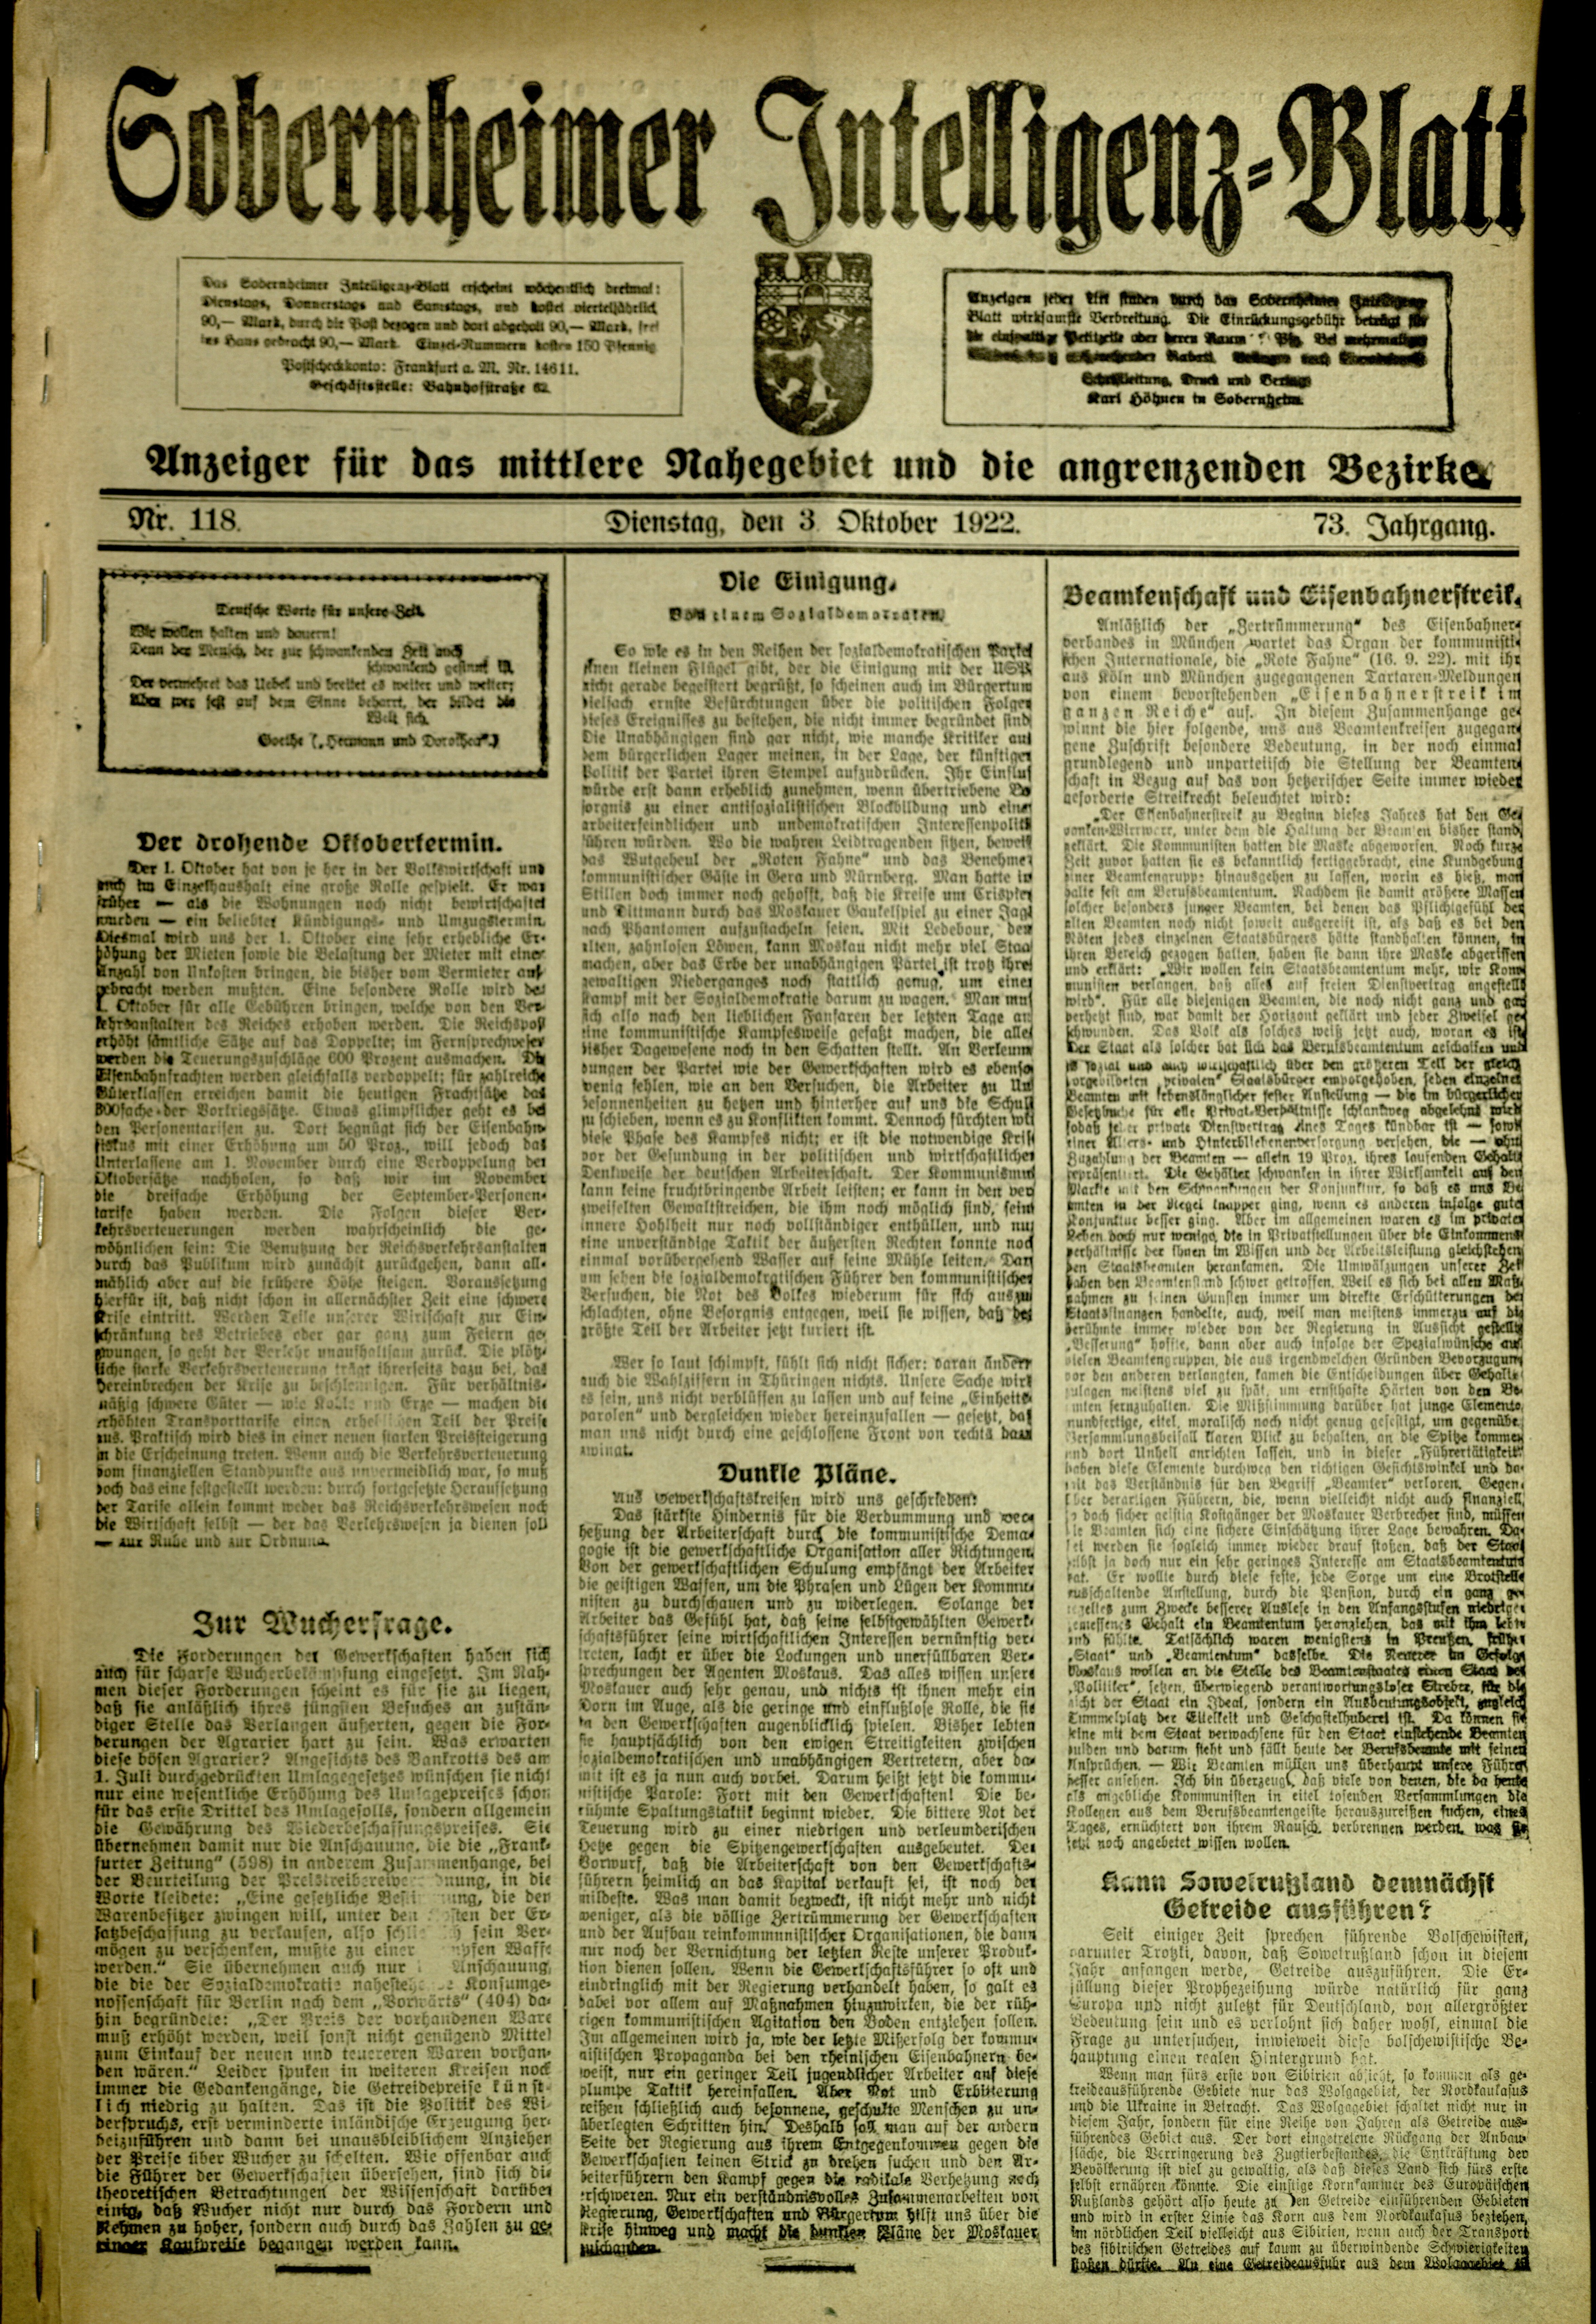 Zeitung: Sobernheimer Intelligenzblatt; Oktober 1922, Jg. 73 Nr. 118 (Heimatmuseum Bad Sobernheim CC BY-NC-SA)